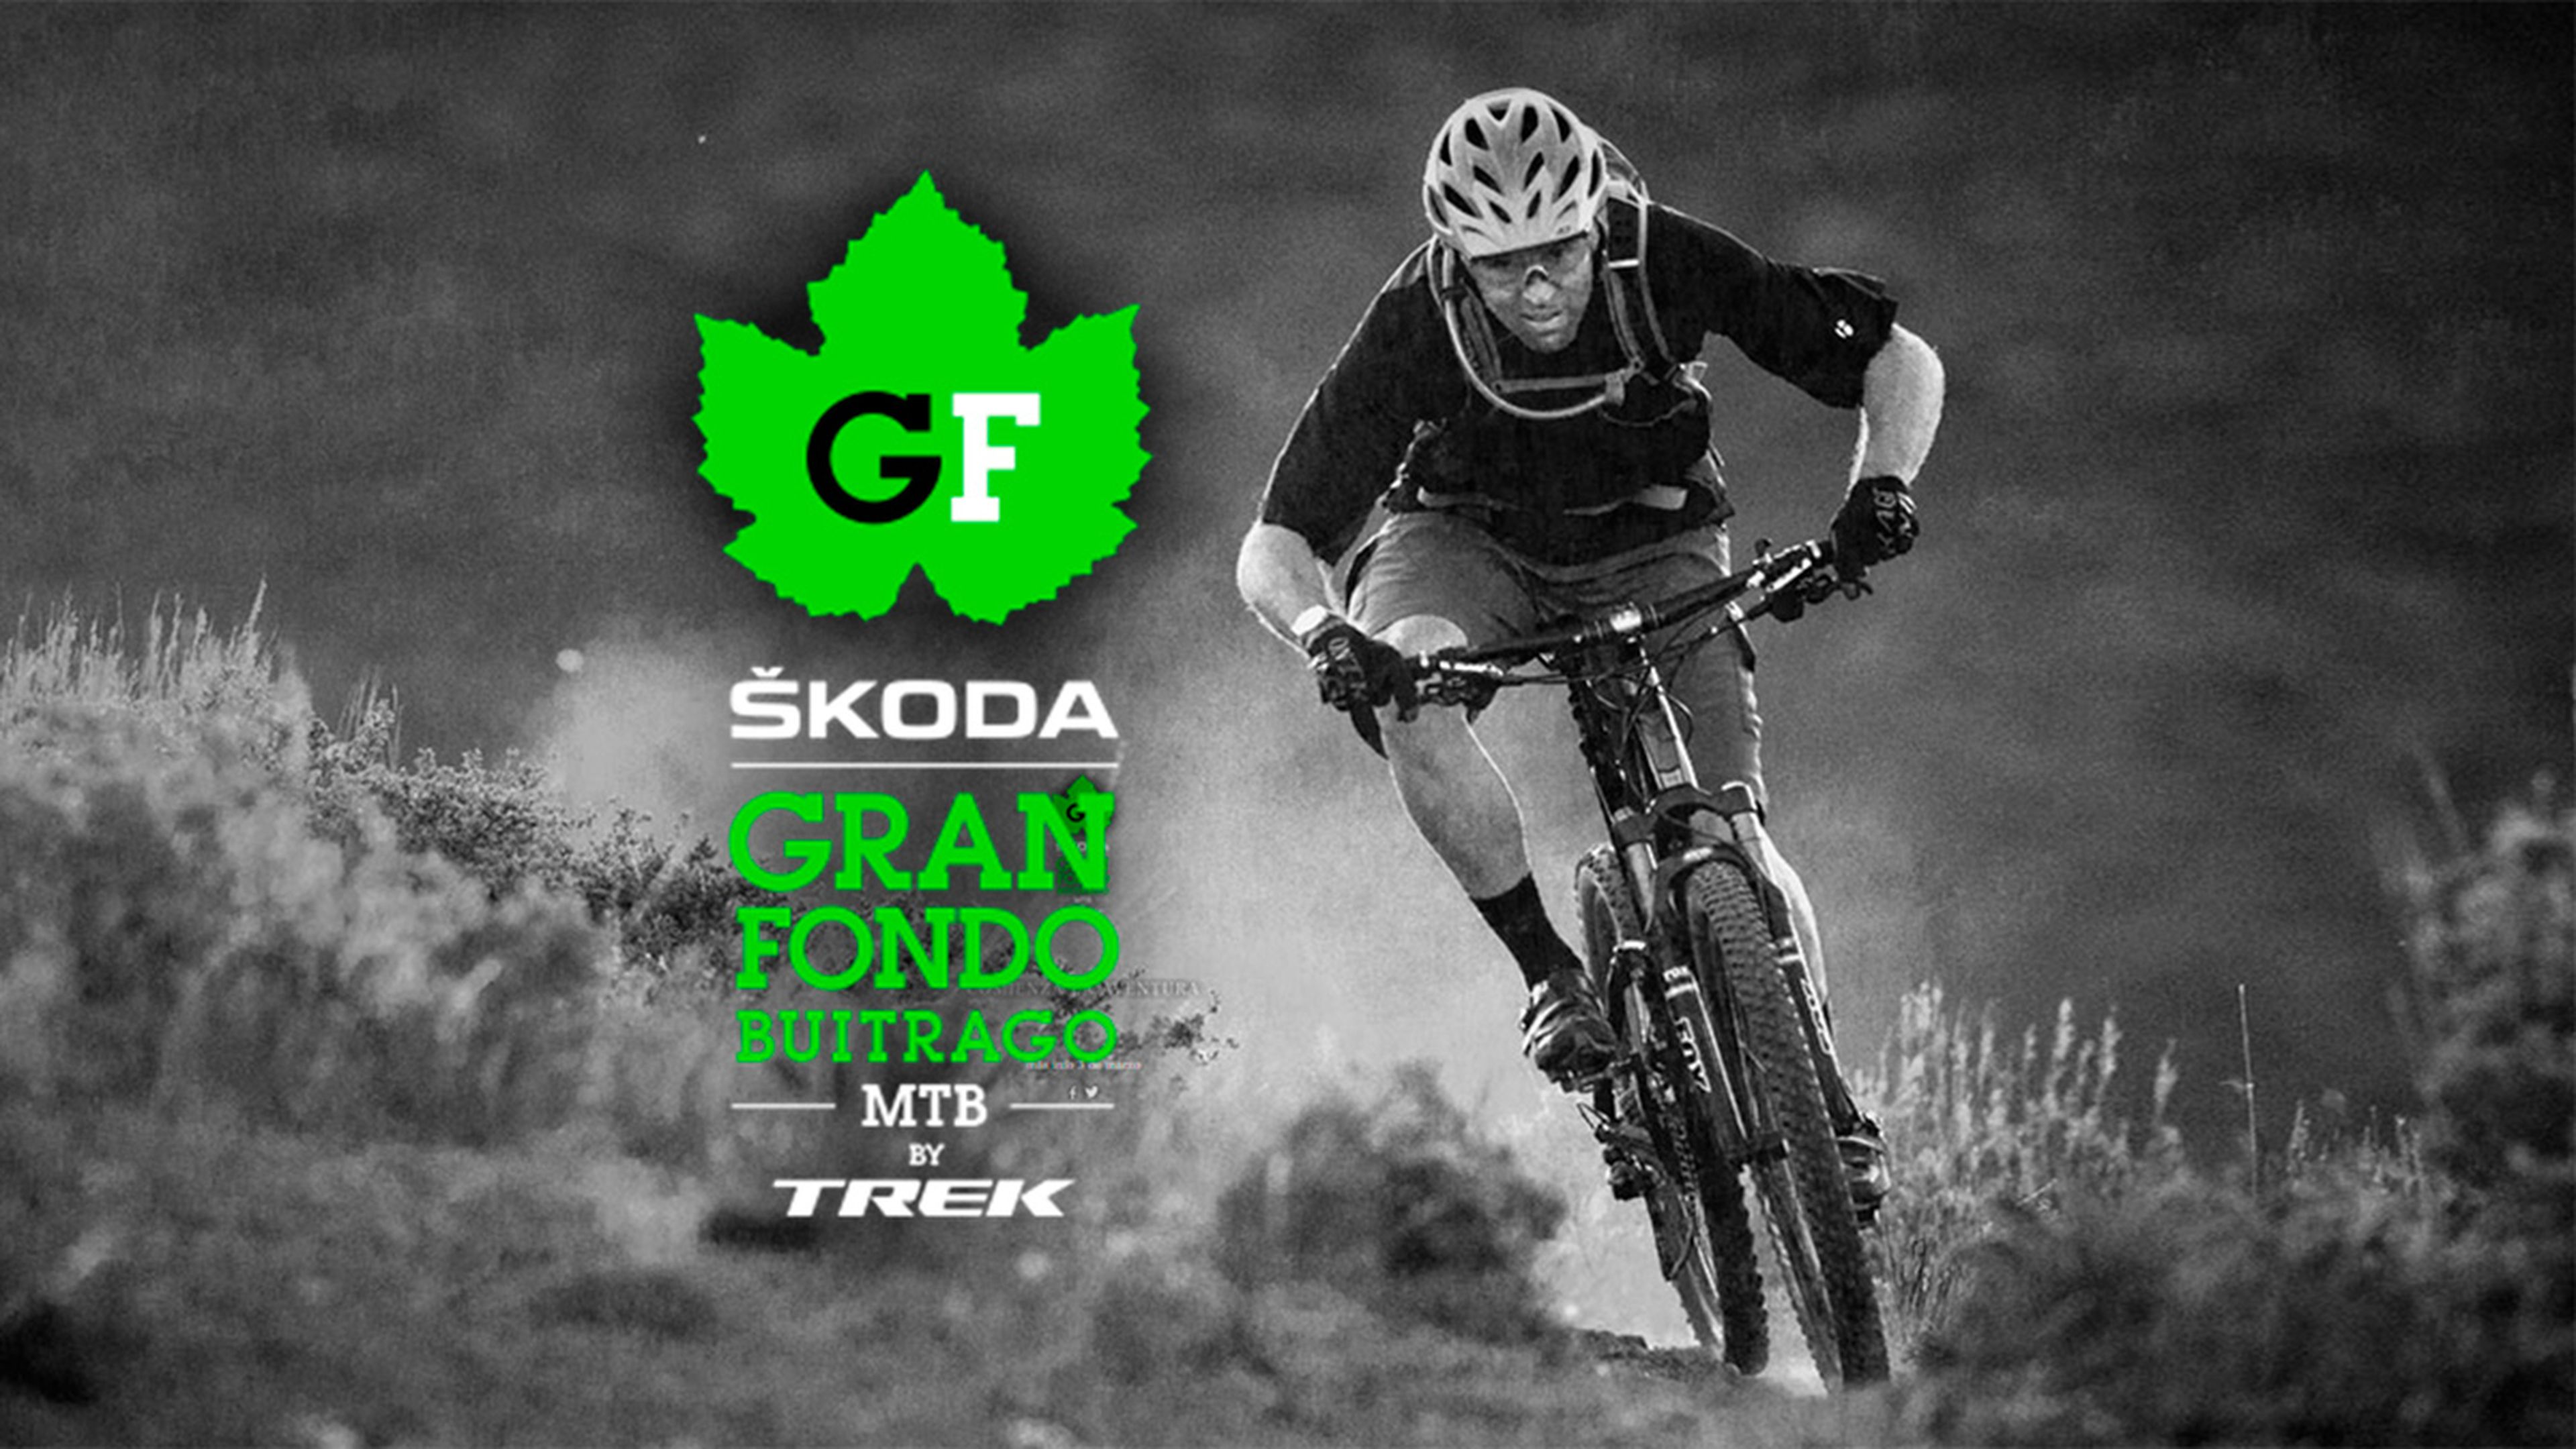 Competición Skoda Gran Fondo Buitrago - cartel